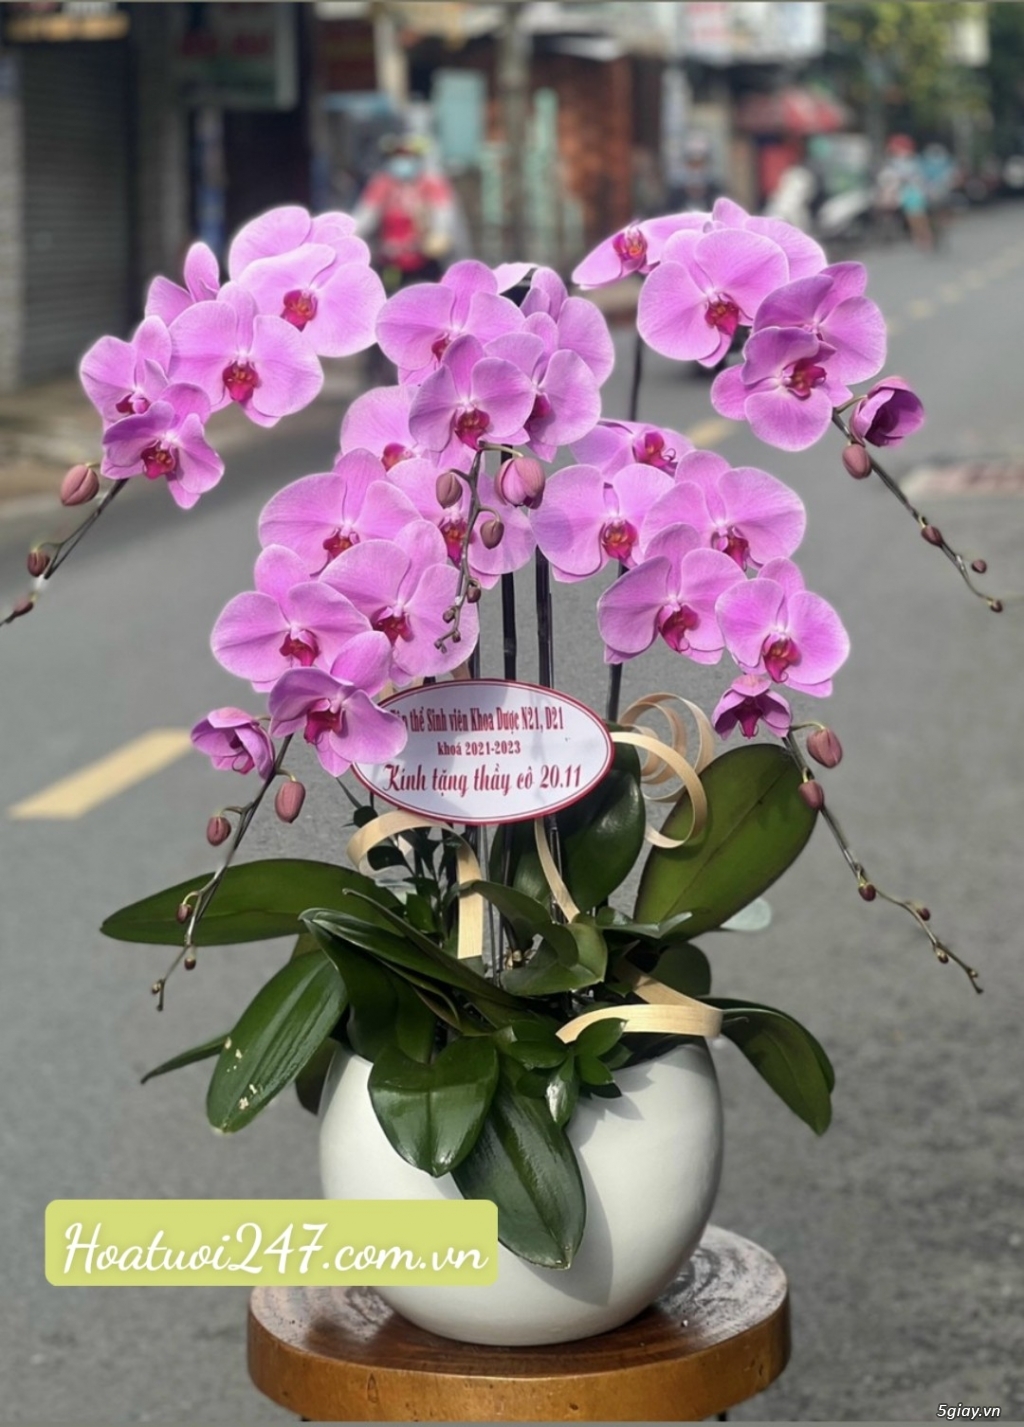 Shop hoa 247 chuyên bán hoa lan hồ điệp cao cấp chất lượng nhất TPHCM - 11